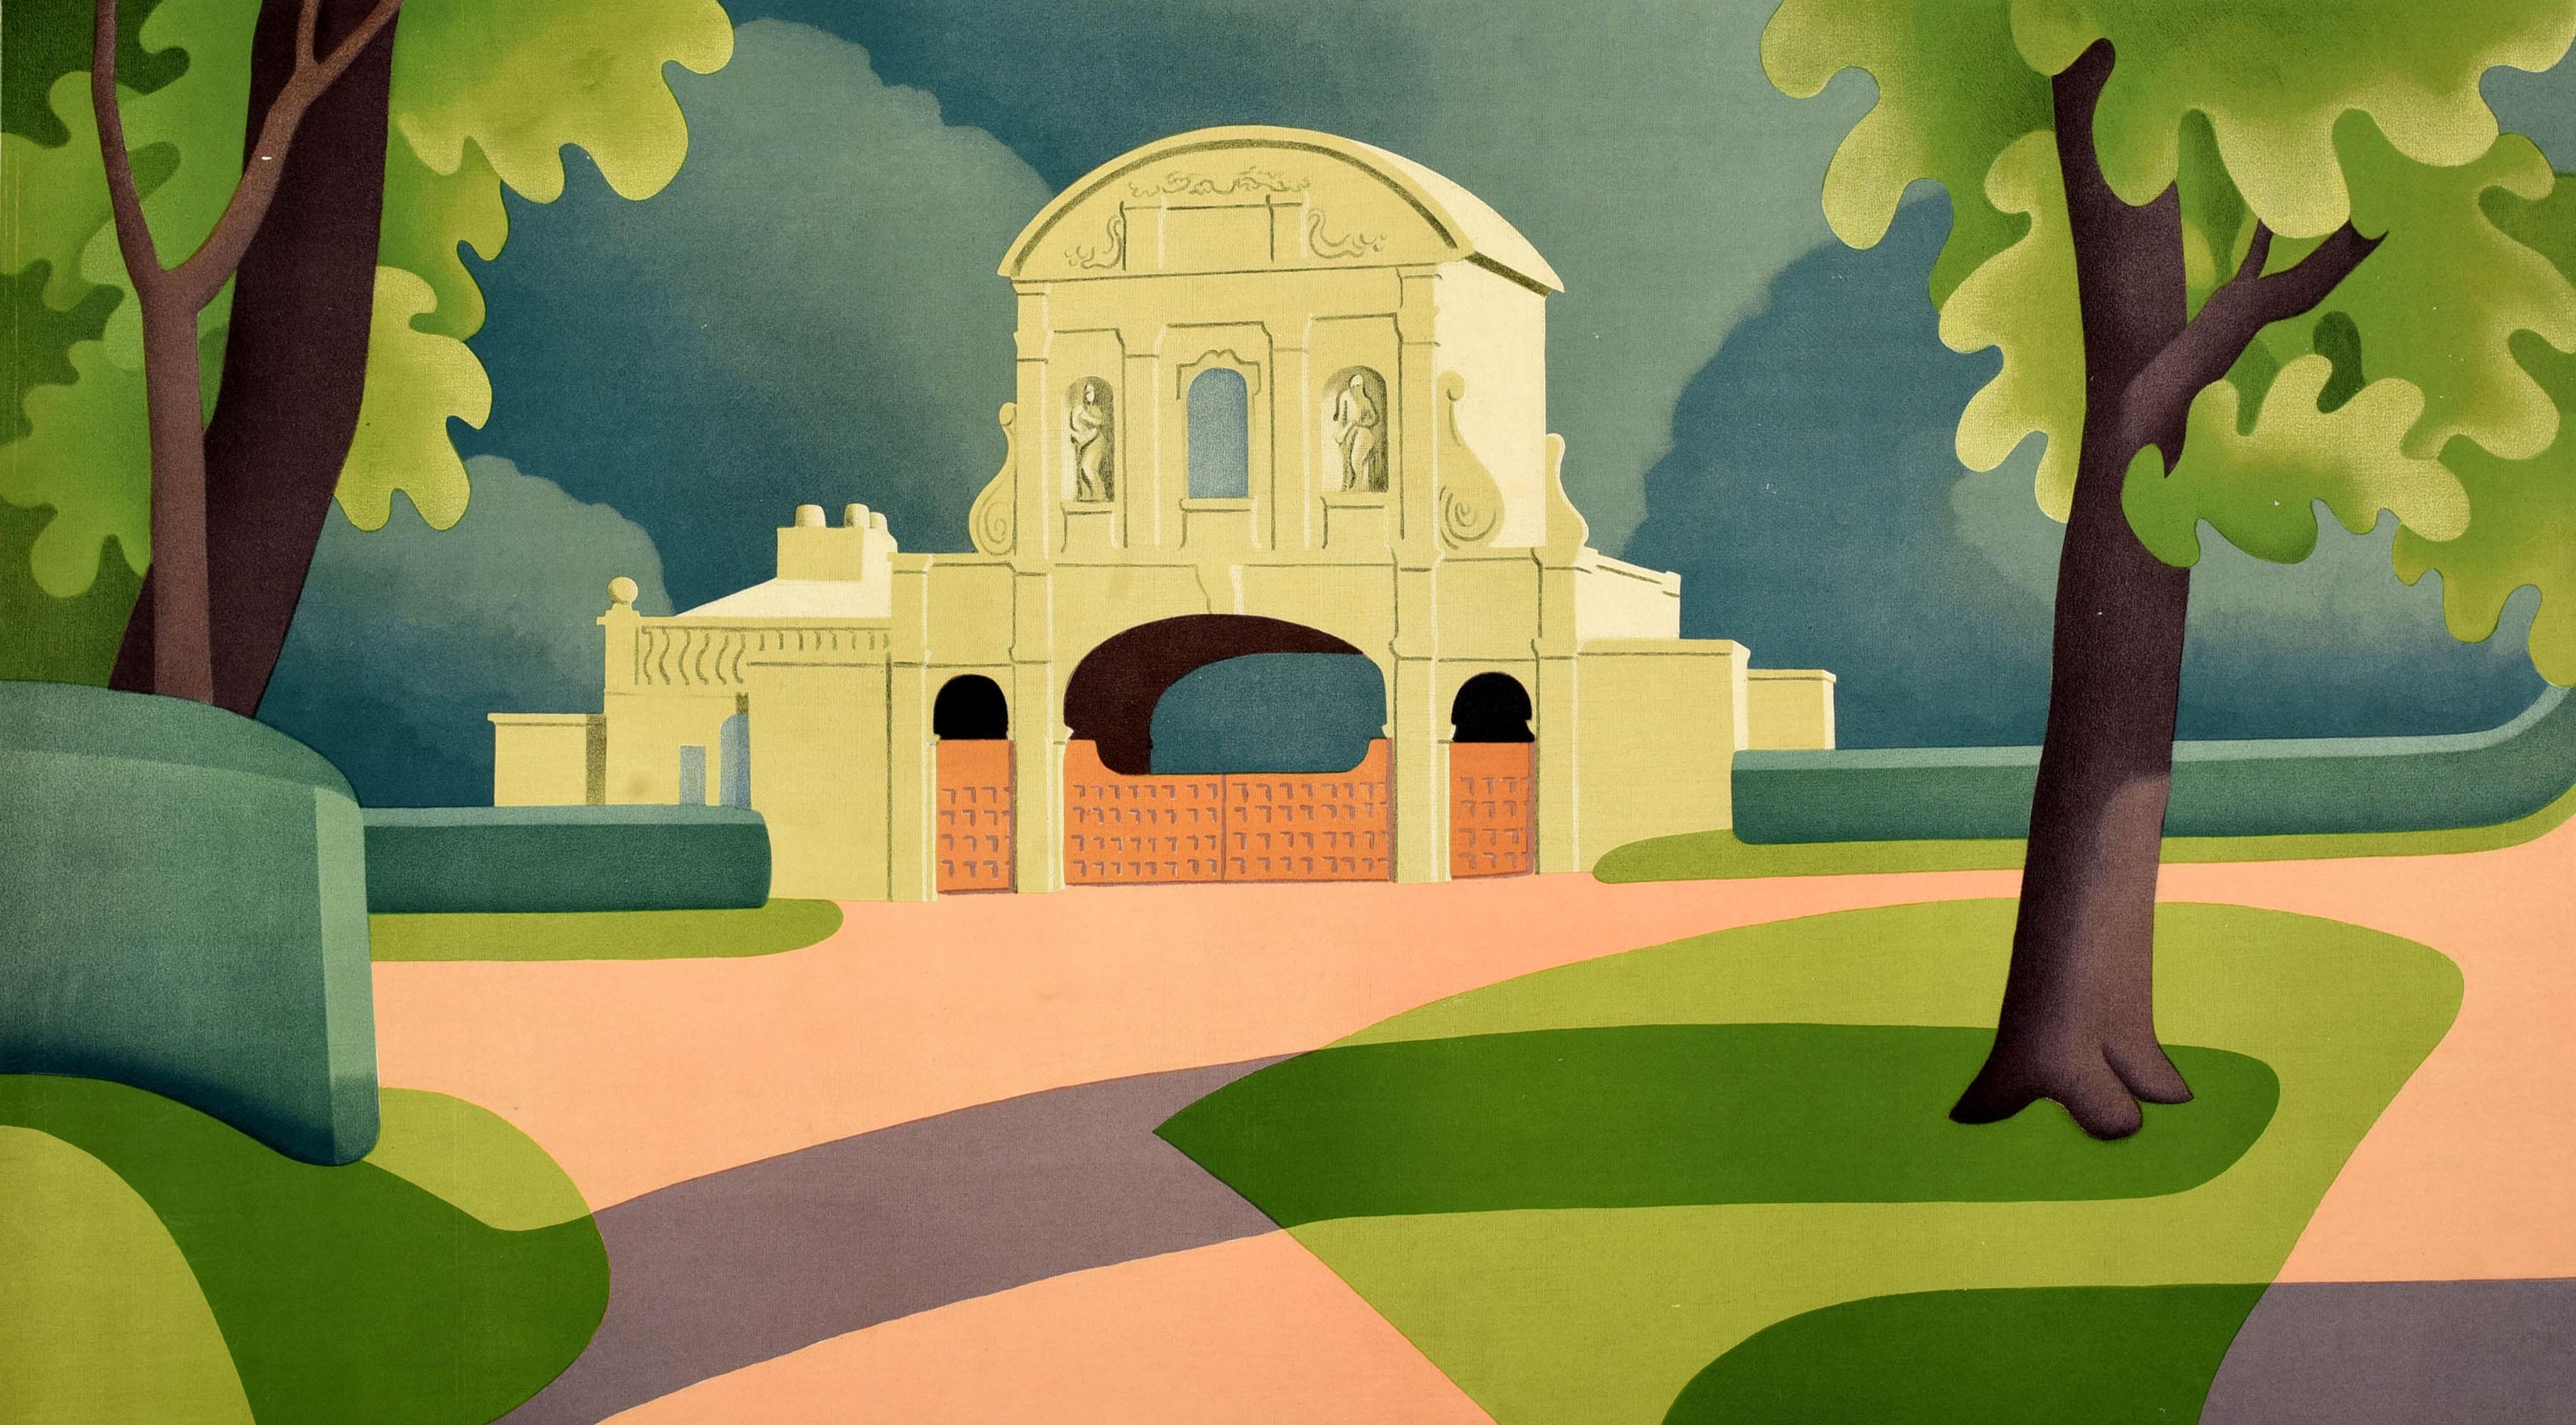 Affiche publicitaire originale de voyage éditée par Shell - To Visit Britain's Landmarks You Can Be Sure Of Shell - représentant une vue de la porte historique de Temple Bar par le peintre anglais Edward Scroggie (1906-1944) entourée d'arbres verts